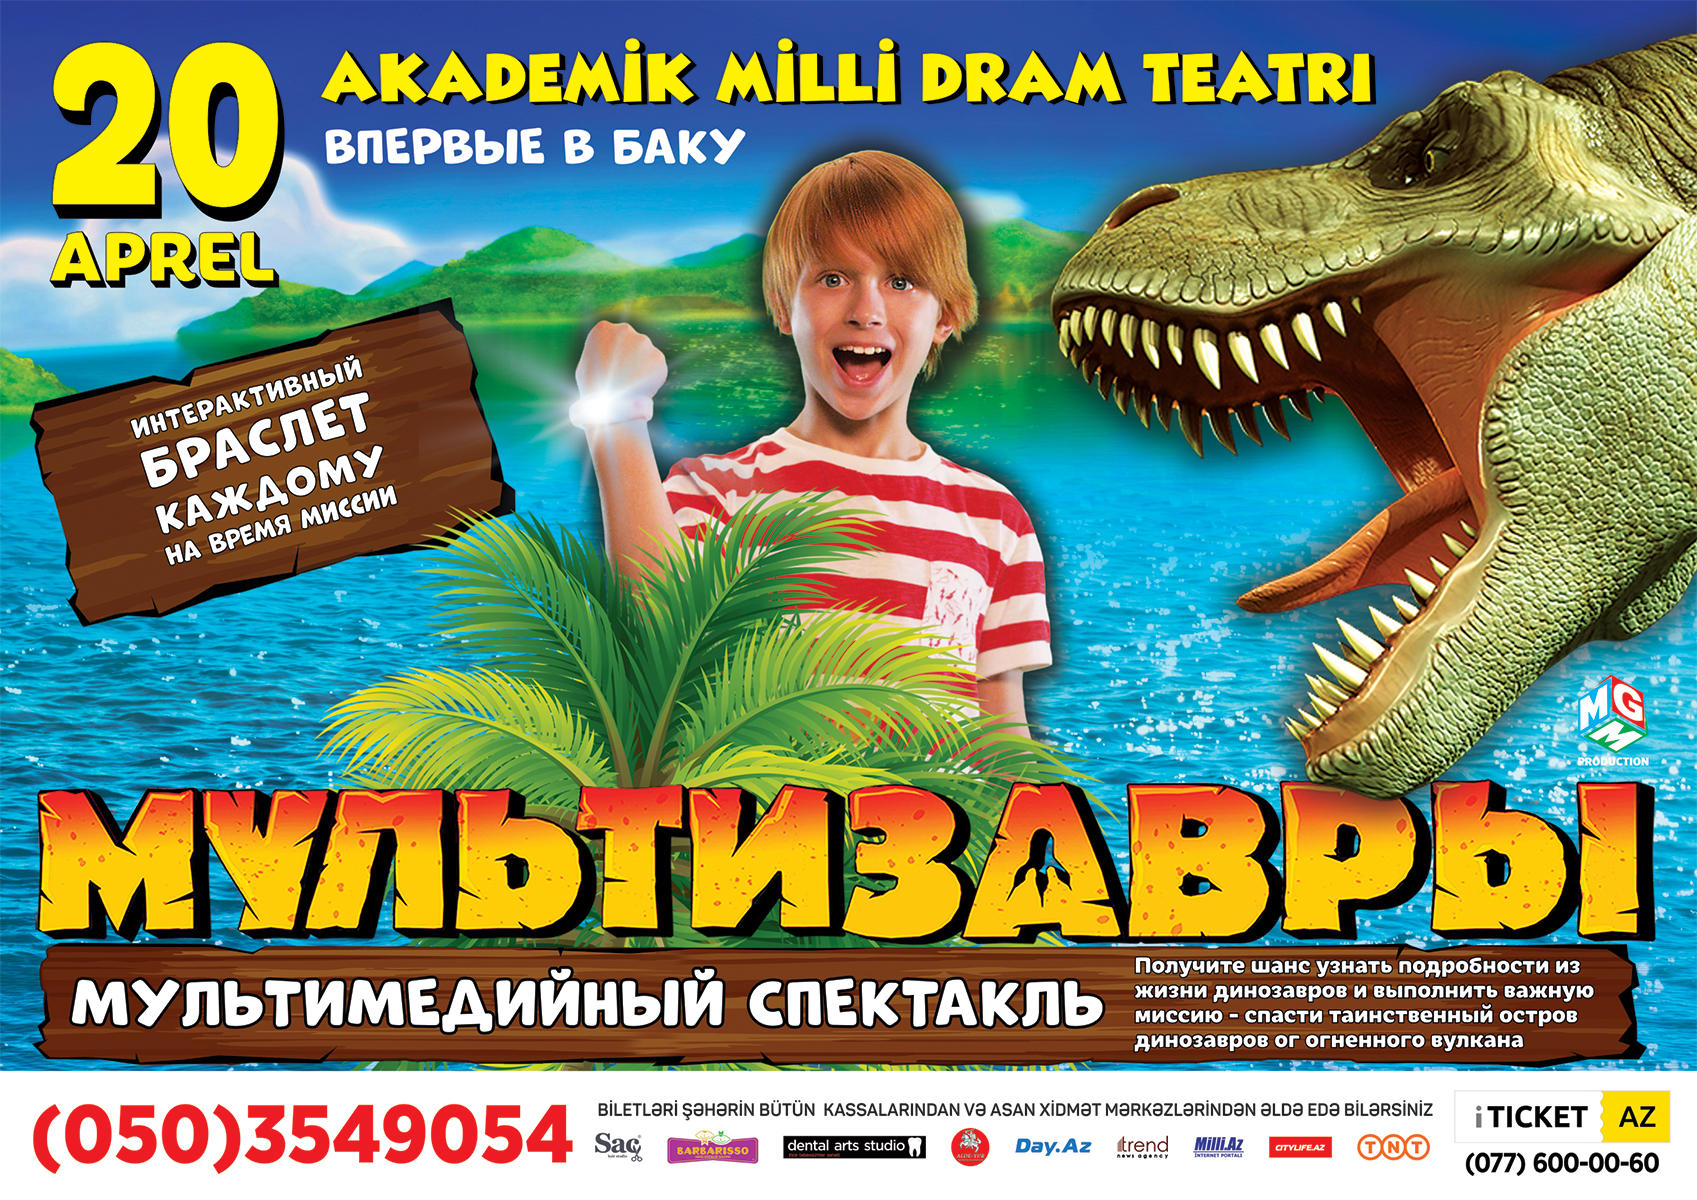 Впервые в Баку мультимедийный московский спектакль "Мультизавры. Таинственный остров"